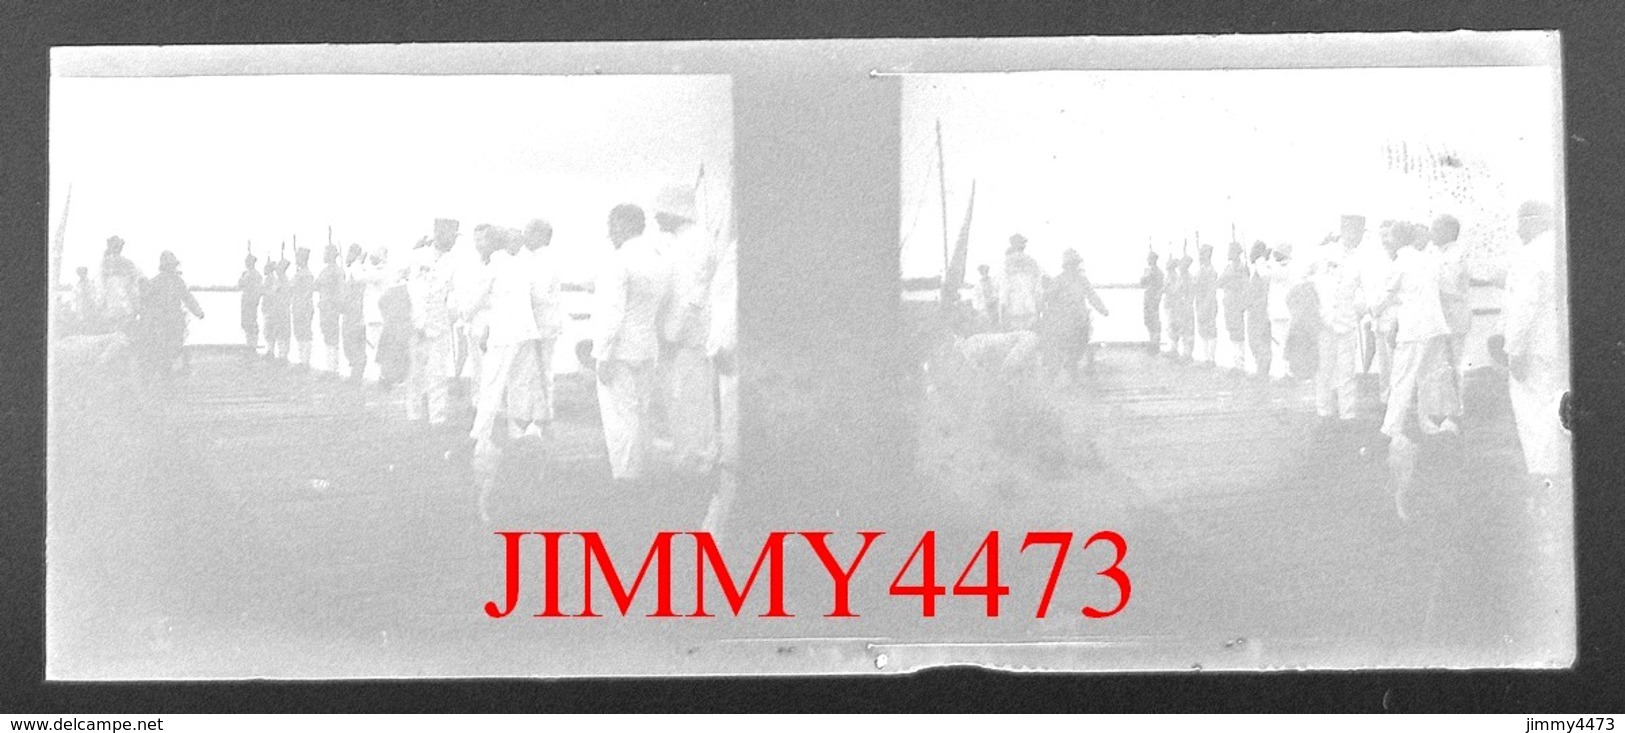 Plaque Photo De Verre Stéréo - Groupe De Soldats Coloniaux En Afrique, à Identifier - Taille 107 X 43 Mlls - Glasdias